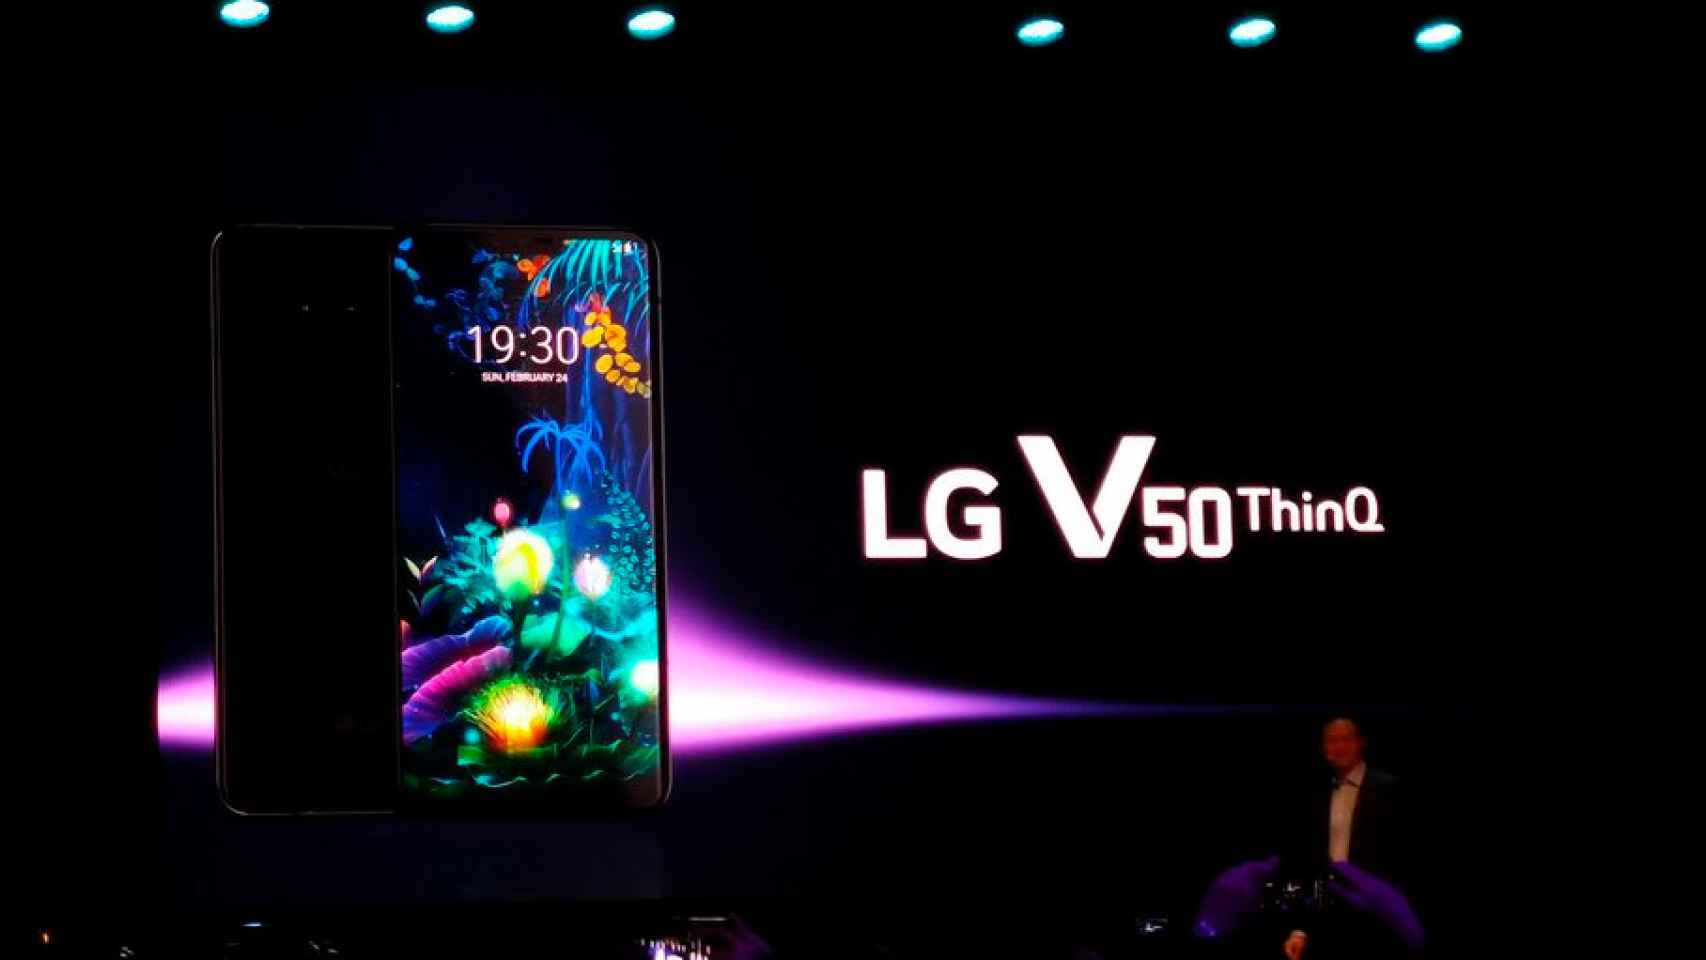 El LG V50 ThinQ 5G ya se puede comprar en Vodafone: precios y tarifas